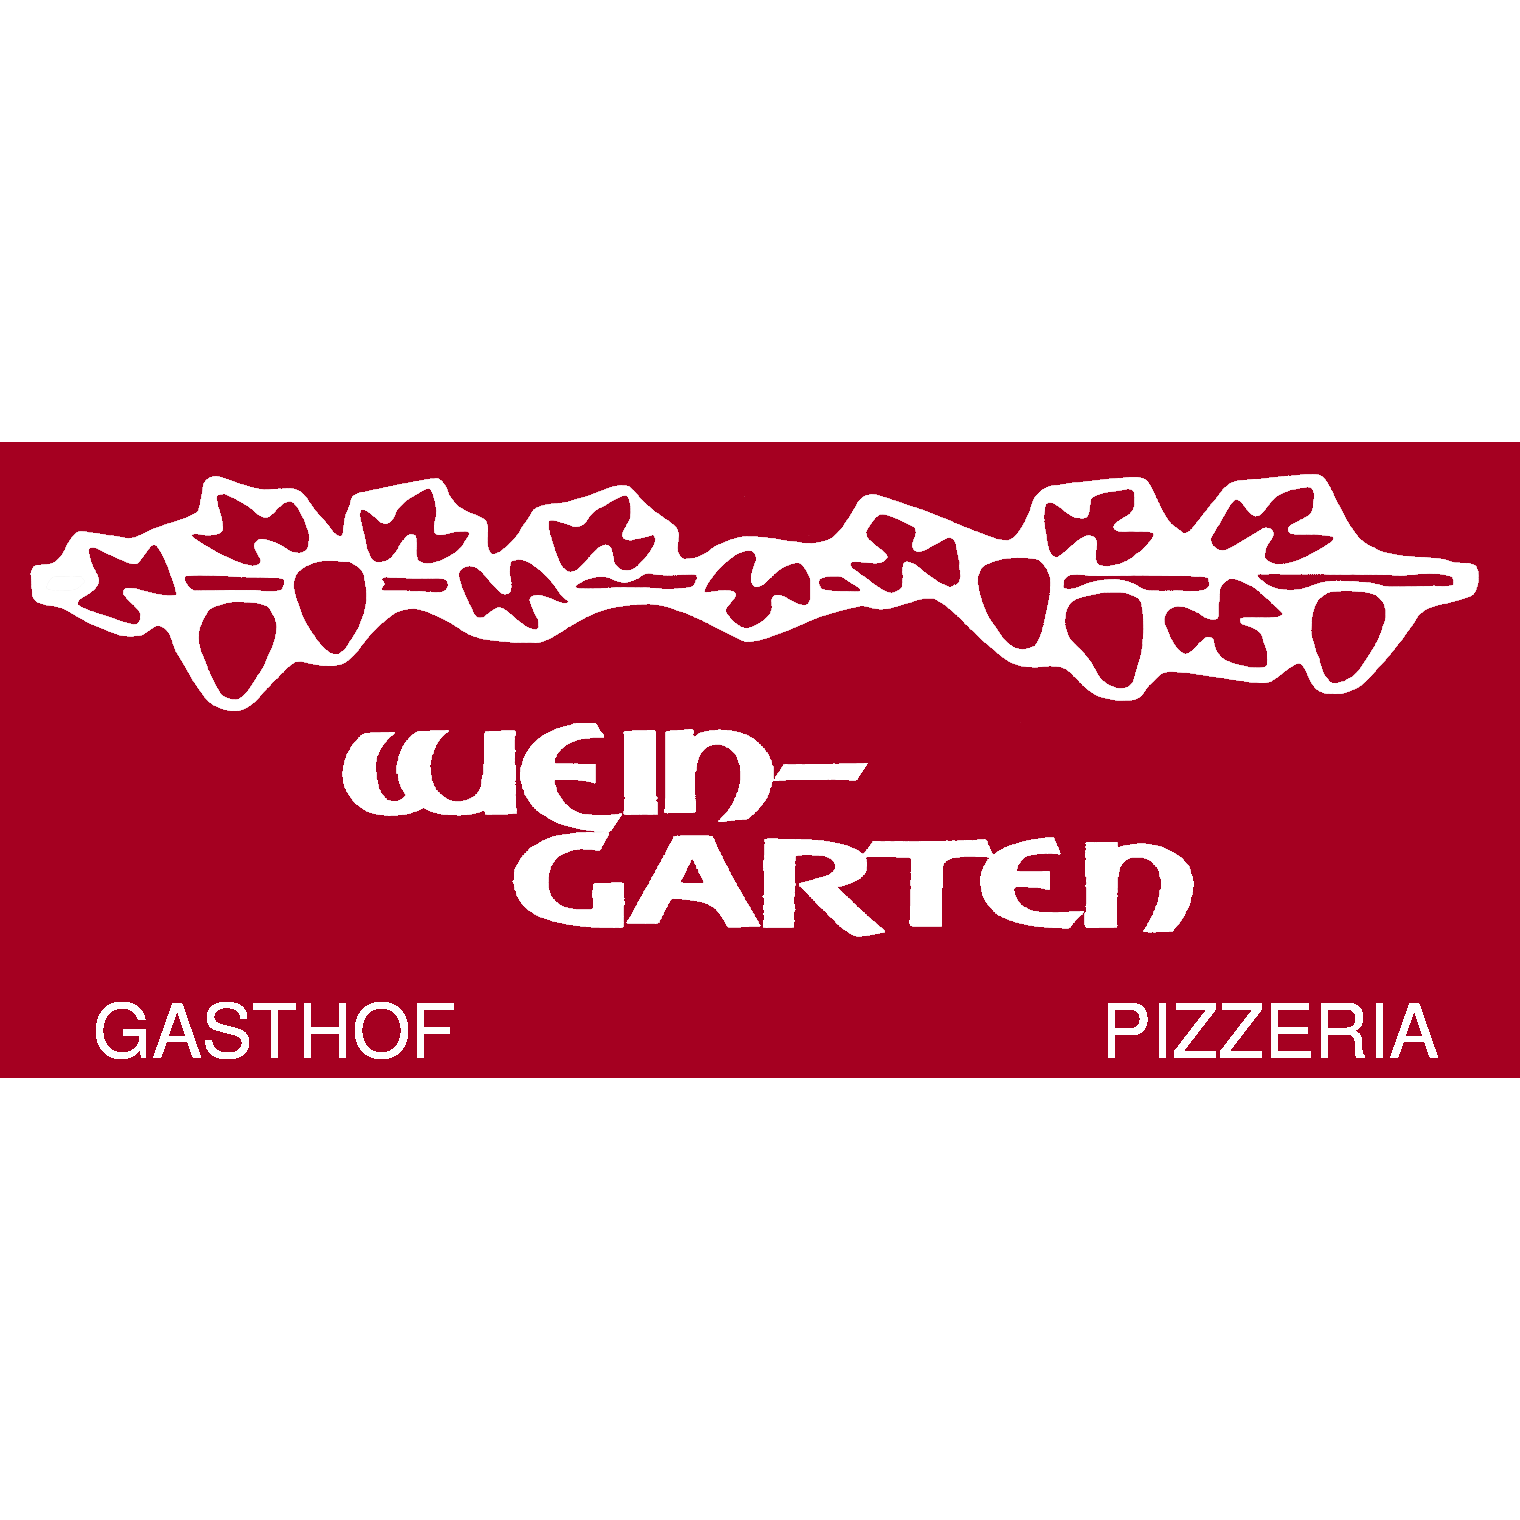 Gasthof Pizzeria Weingarten